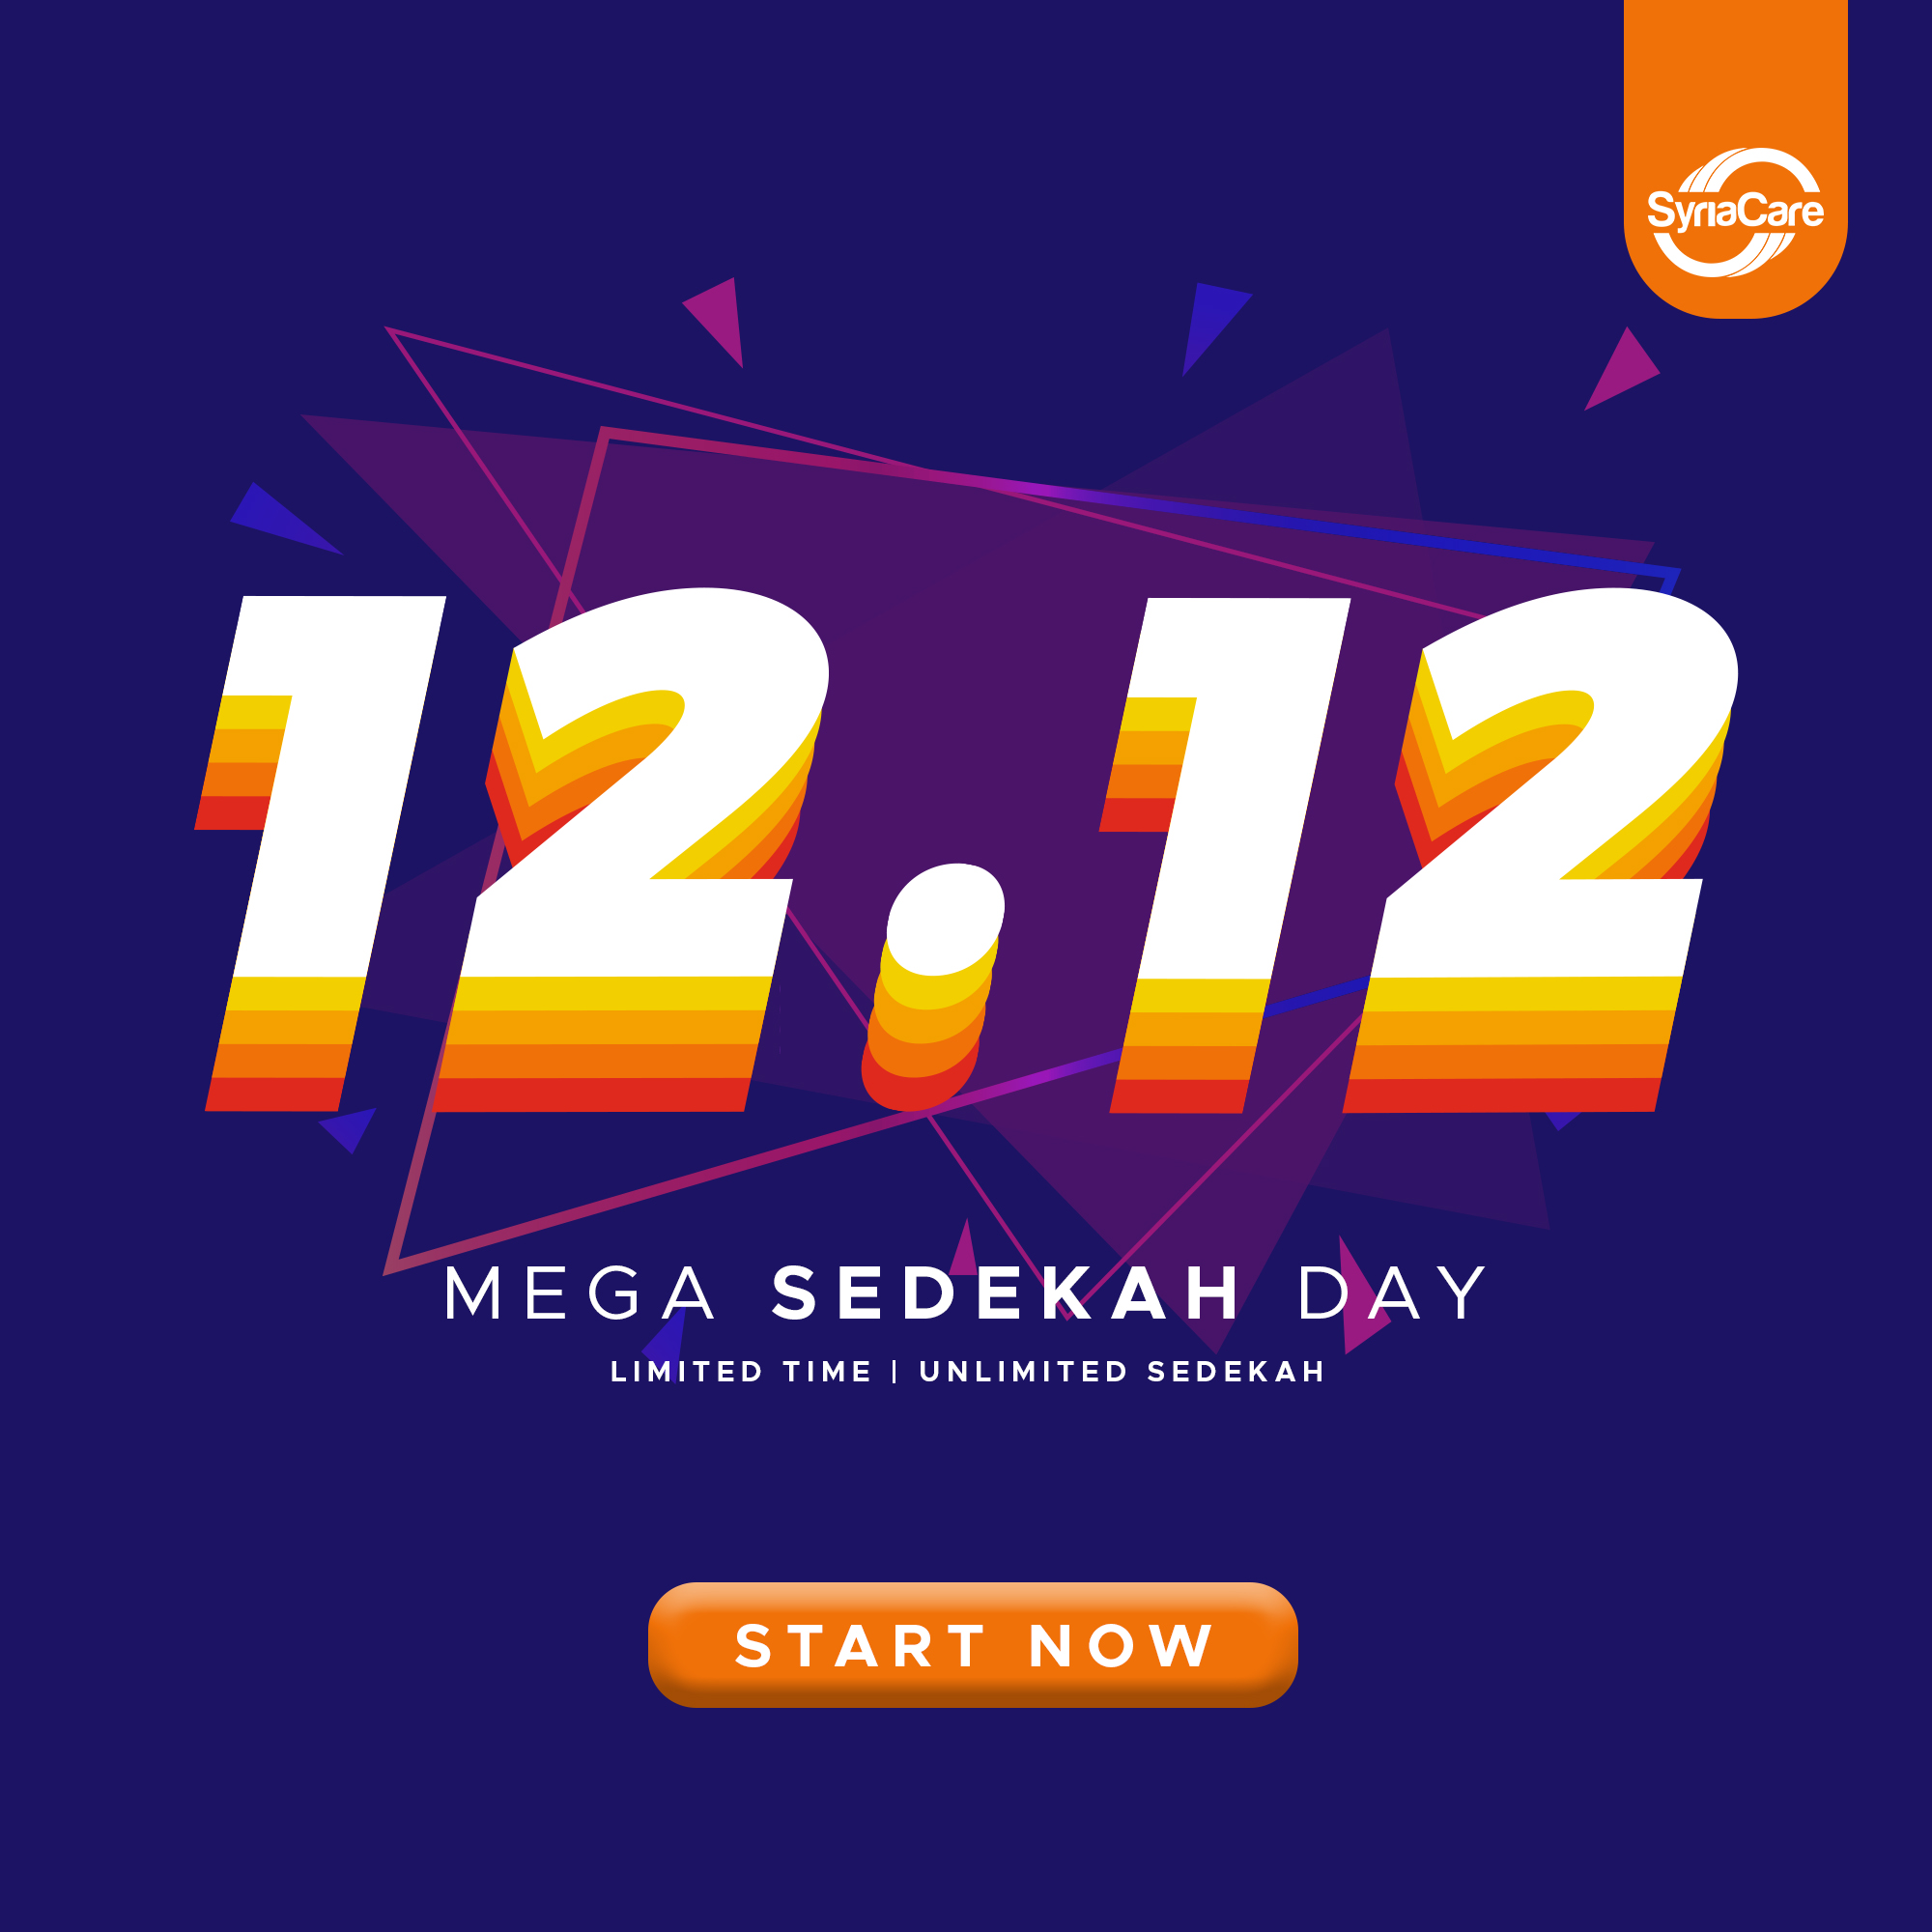 Mega Sedekah Day 12.12 start now